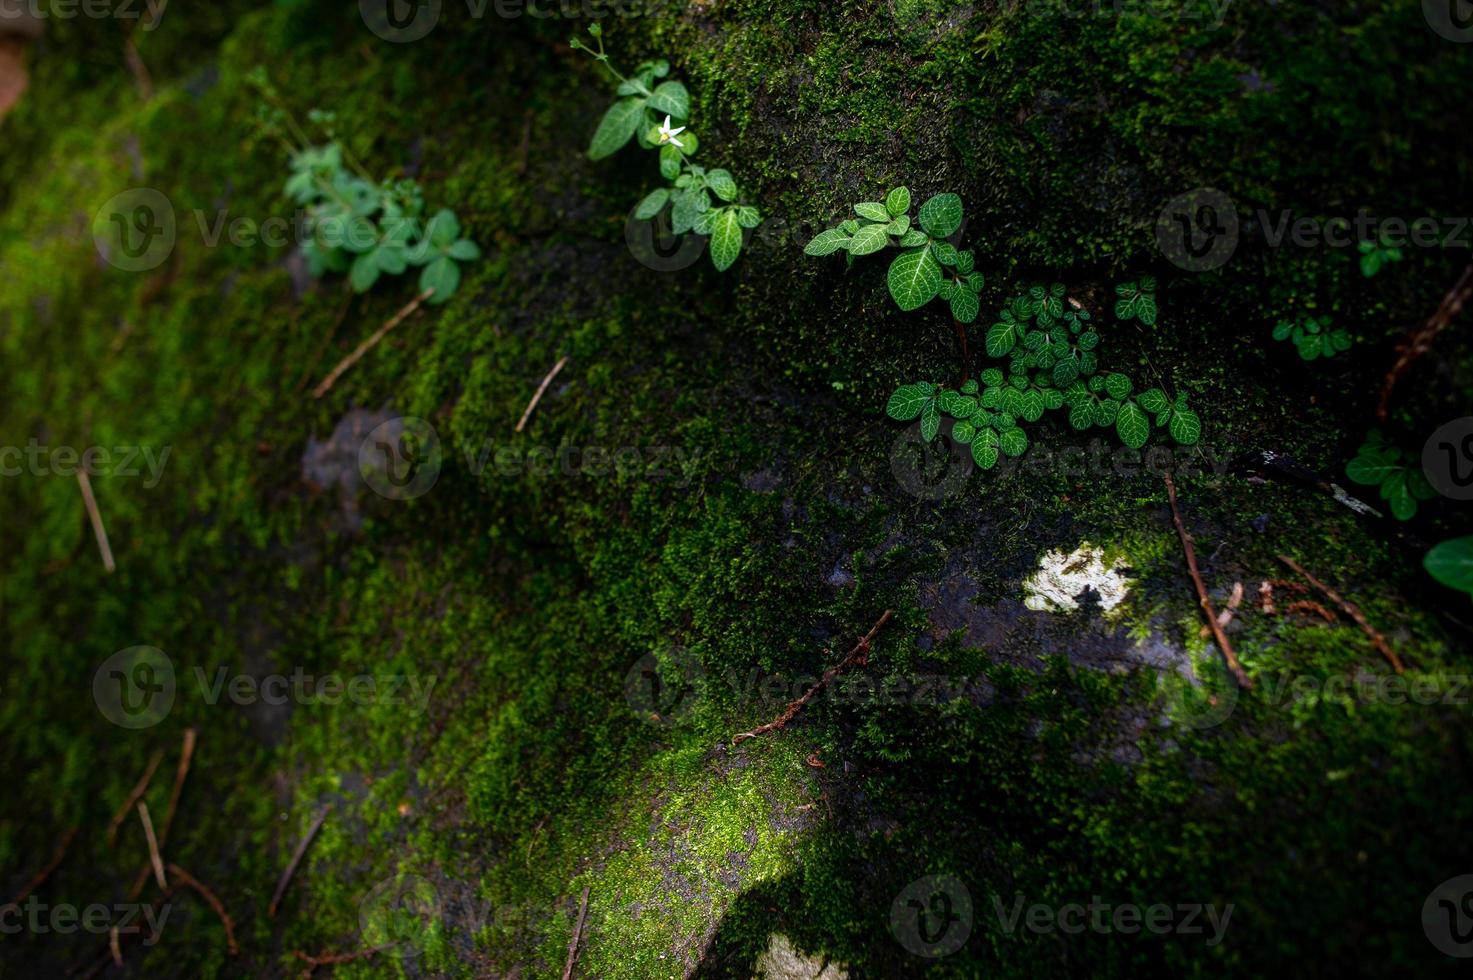 langs de rotsen komen mos en kleine plantensoorten voor. foto